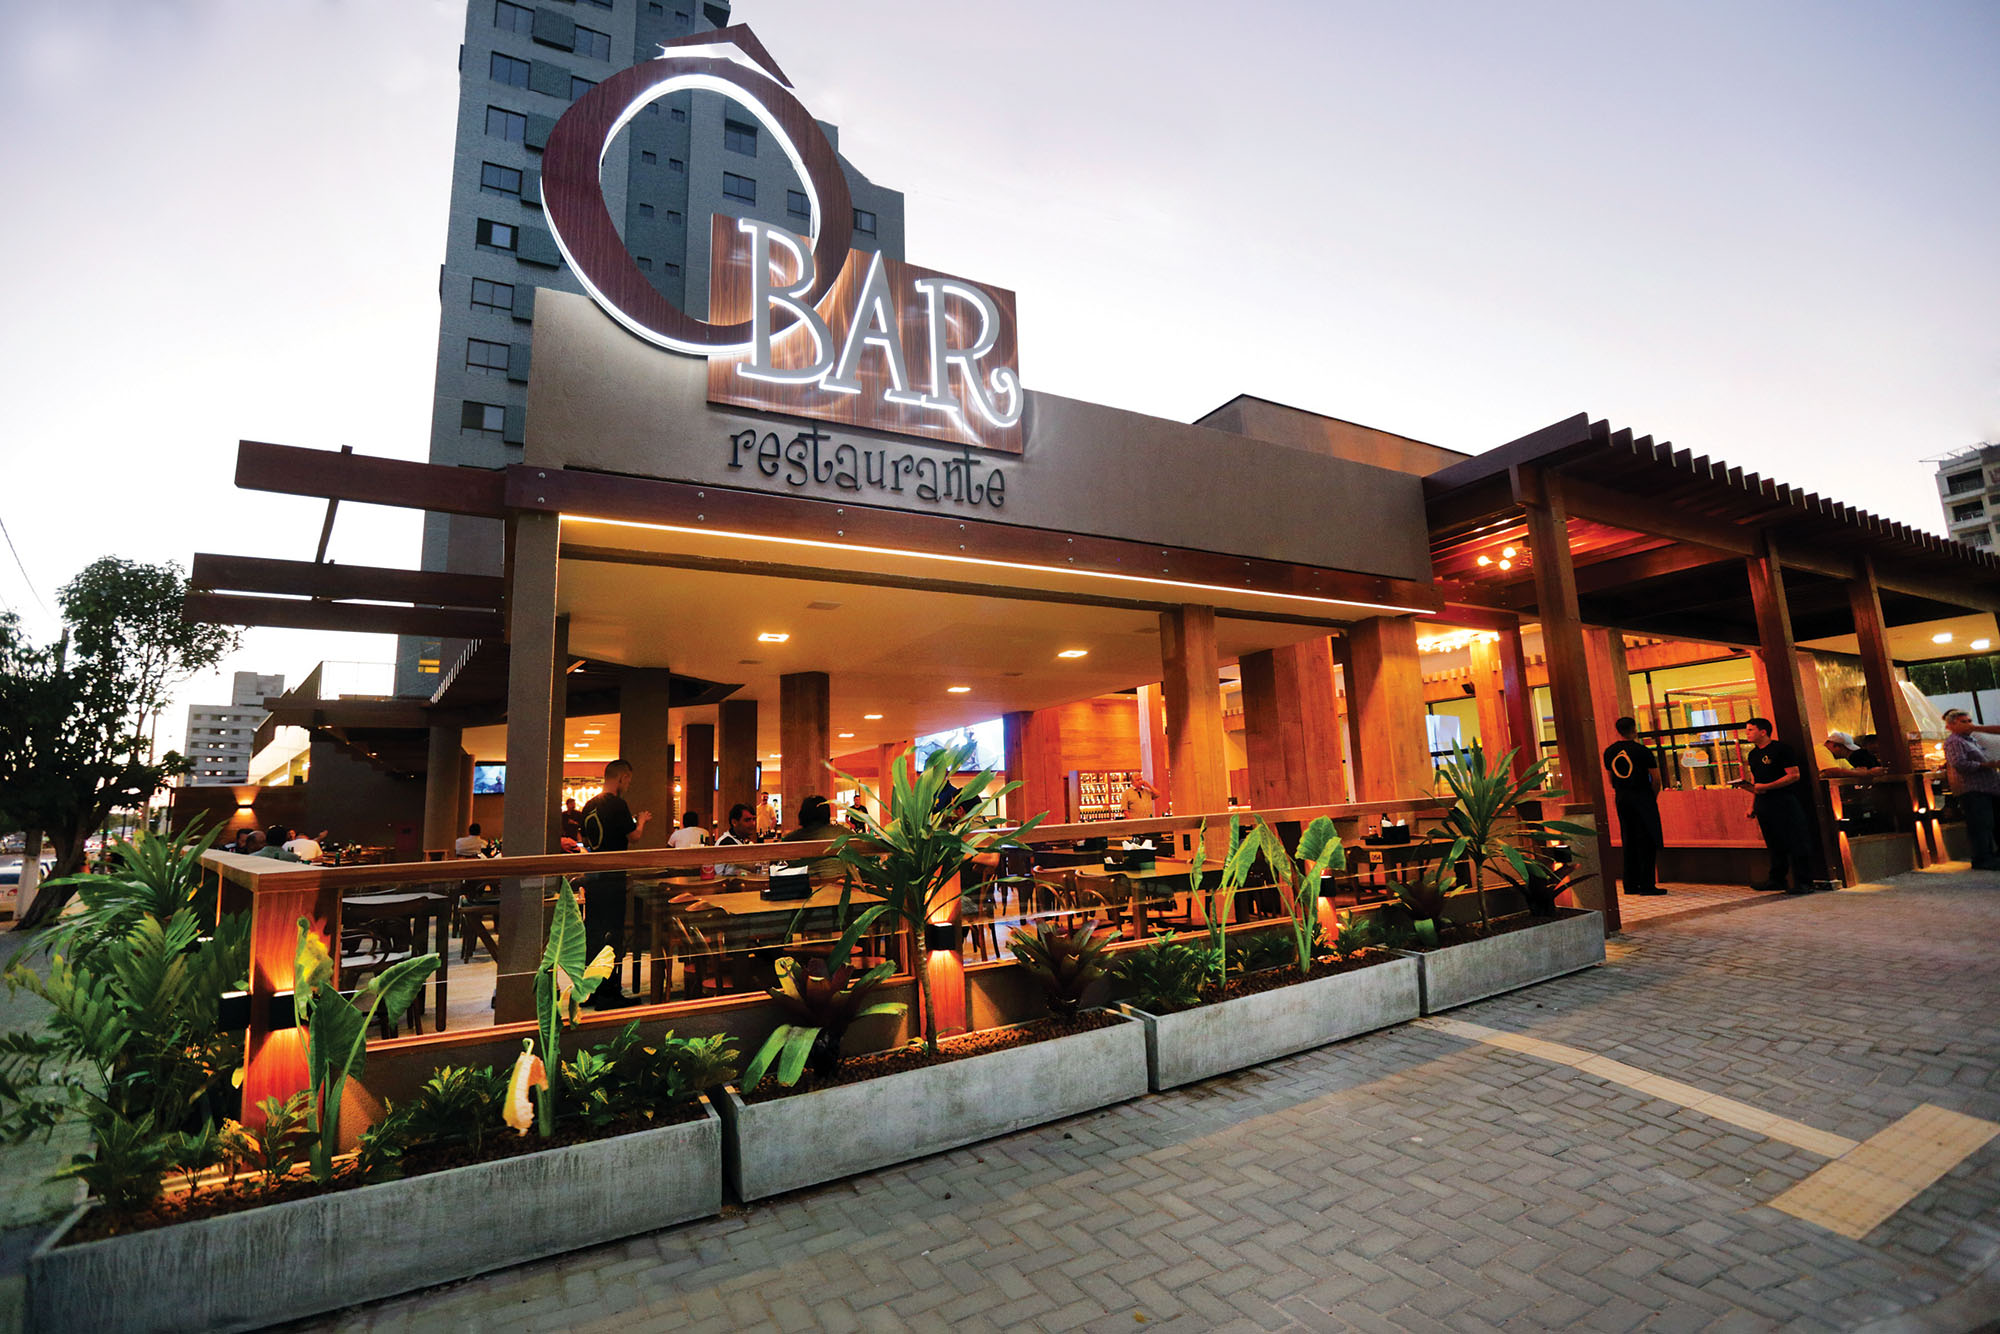 Ô Bar Restaurante inaugura em Ponta Negra